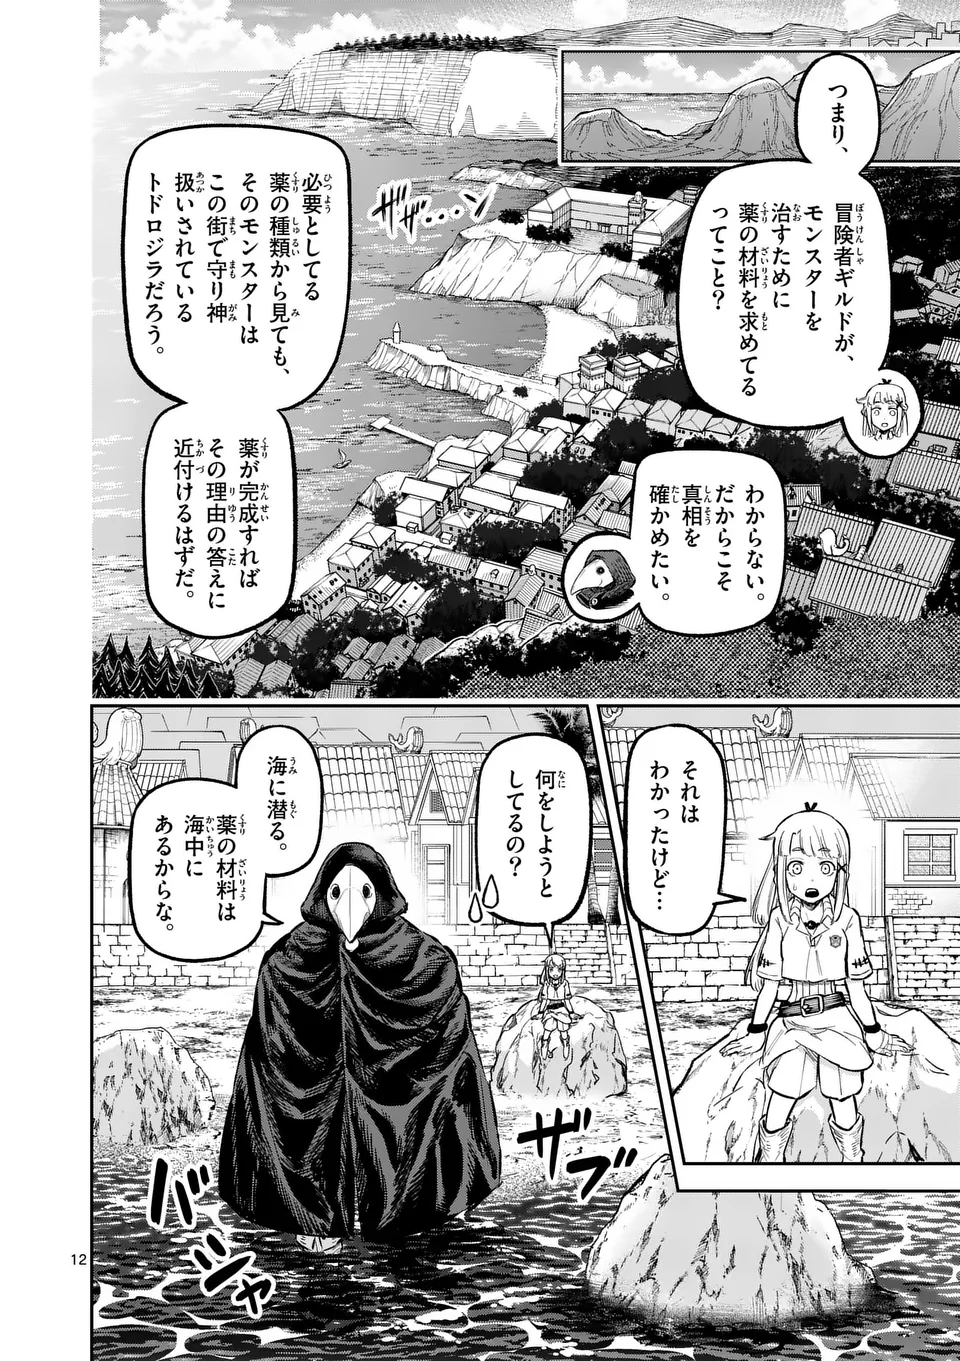 Juuou to Yakusou - Chapter 22 - Page 12